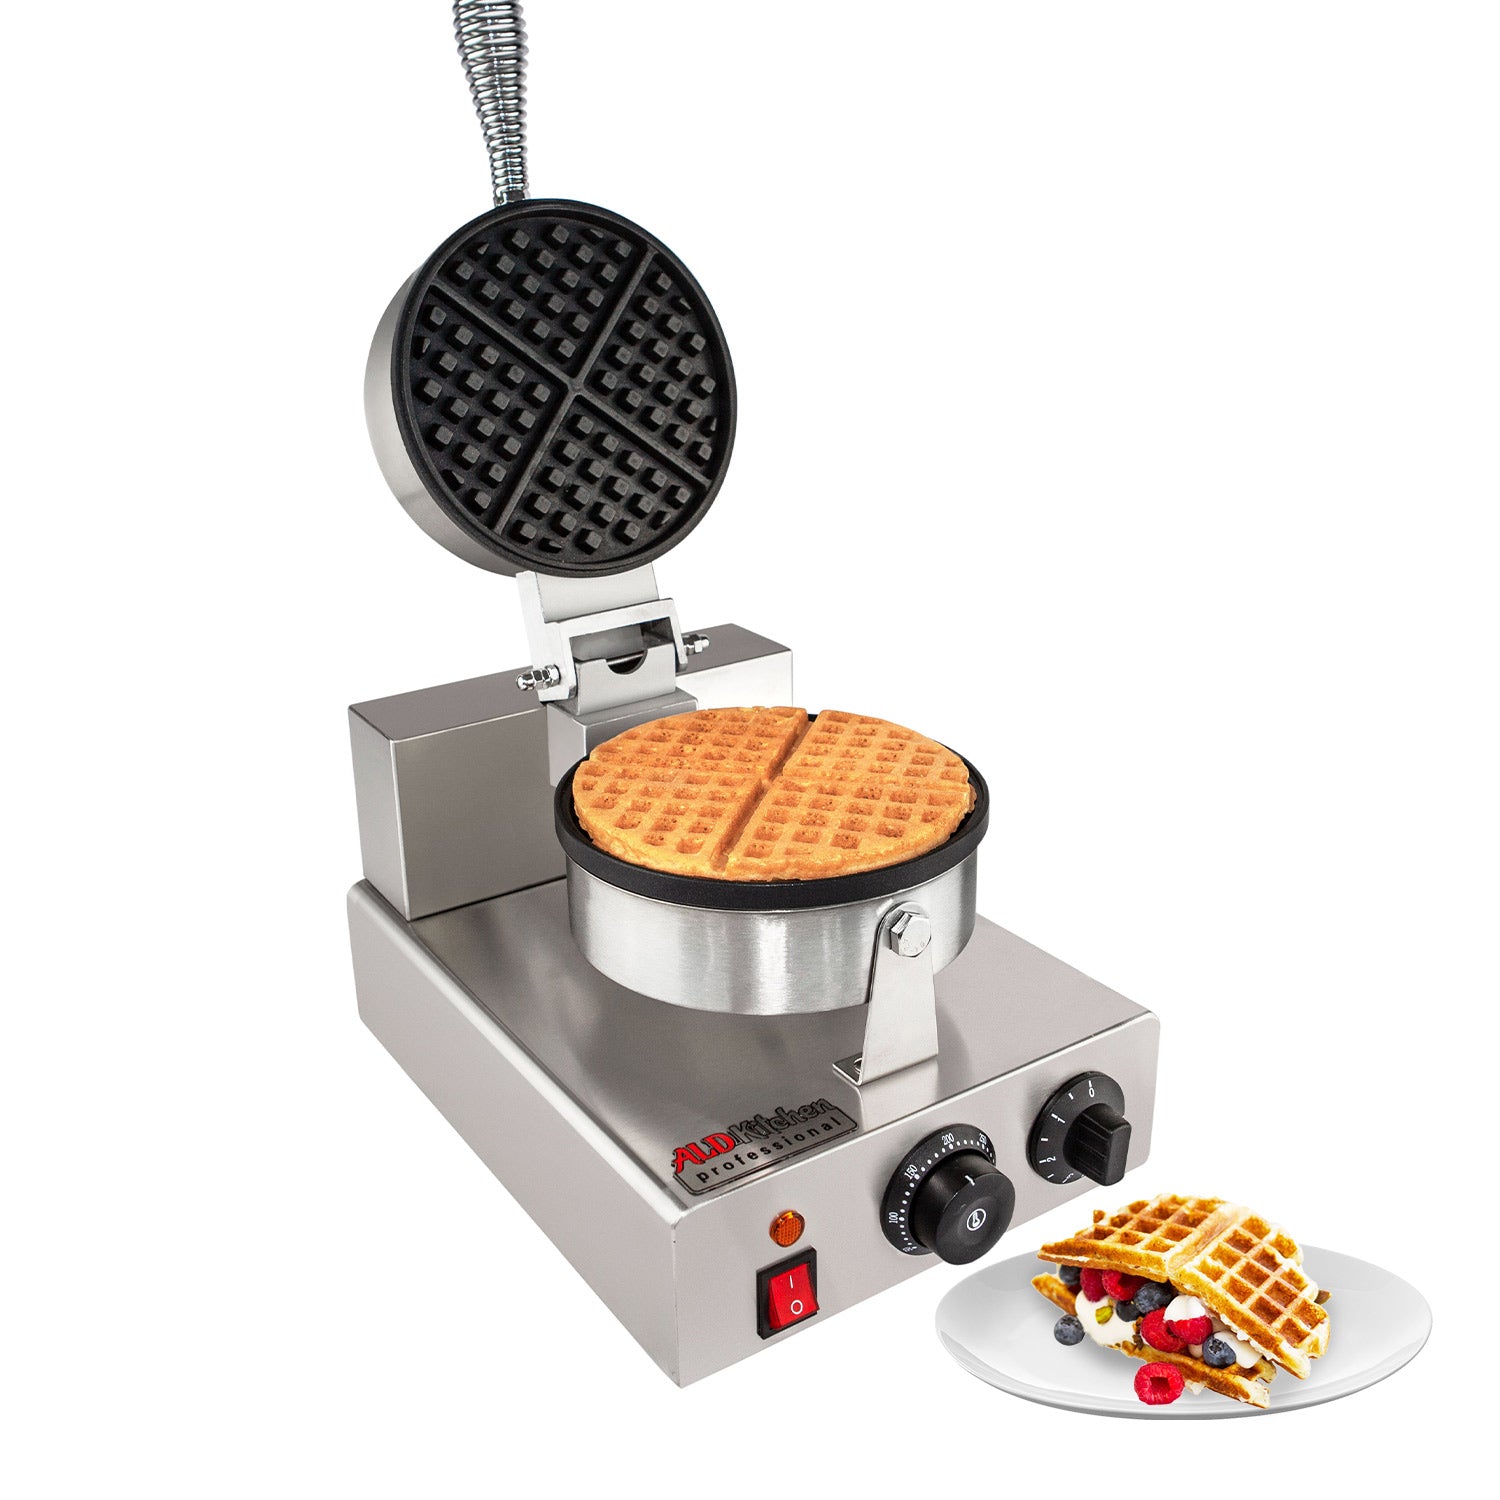 http://ald.kitchen/cdn/shop/products/belgian-waffle-maker-1-1_0b2caf3b-3fd5-42d5-97e2-f077e6b2d169.jpg?v=1585425299